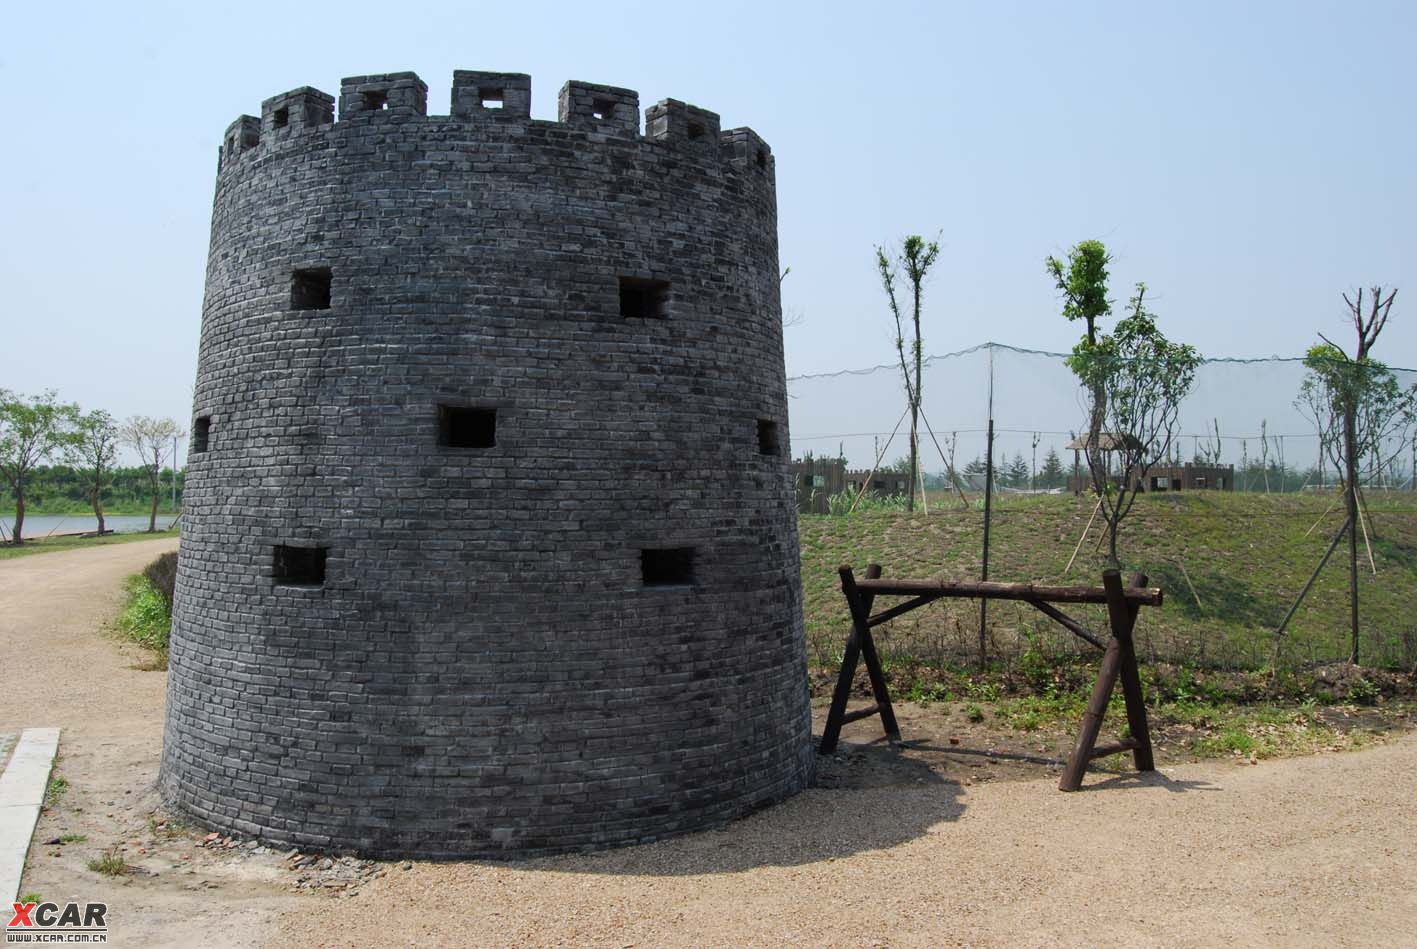 南京方山碉堡图片